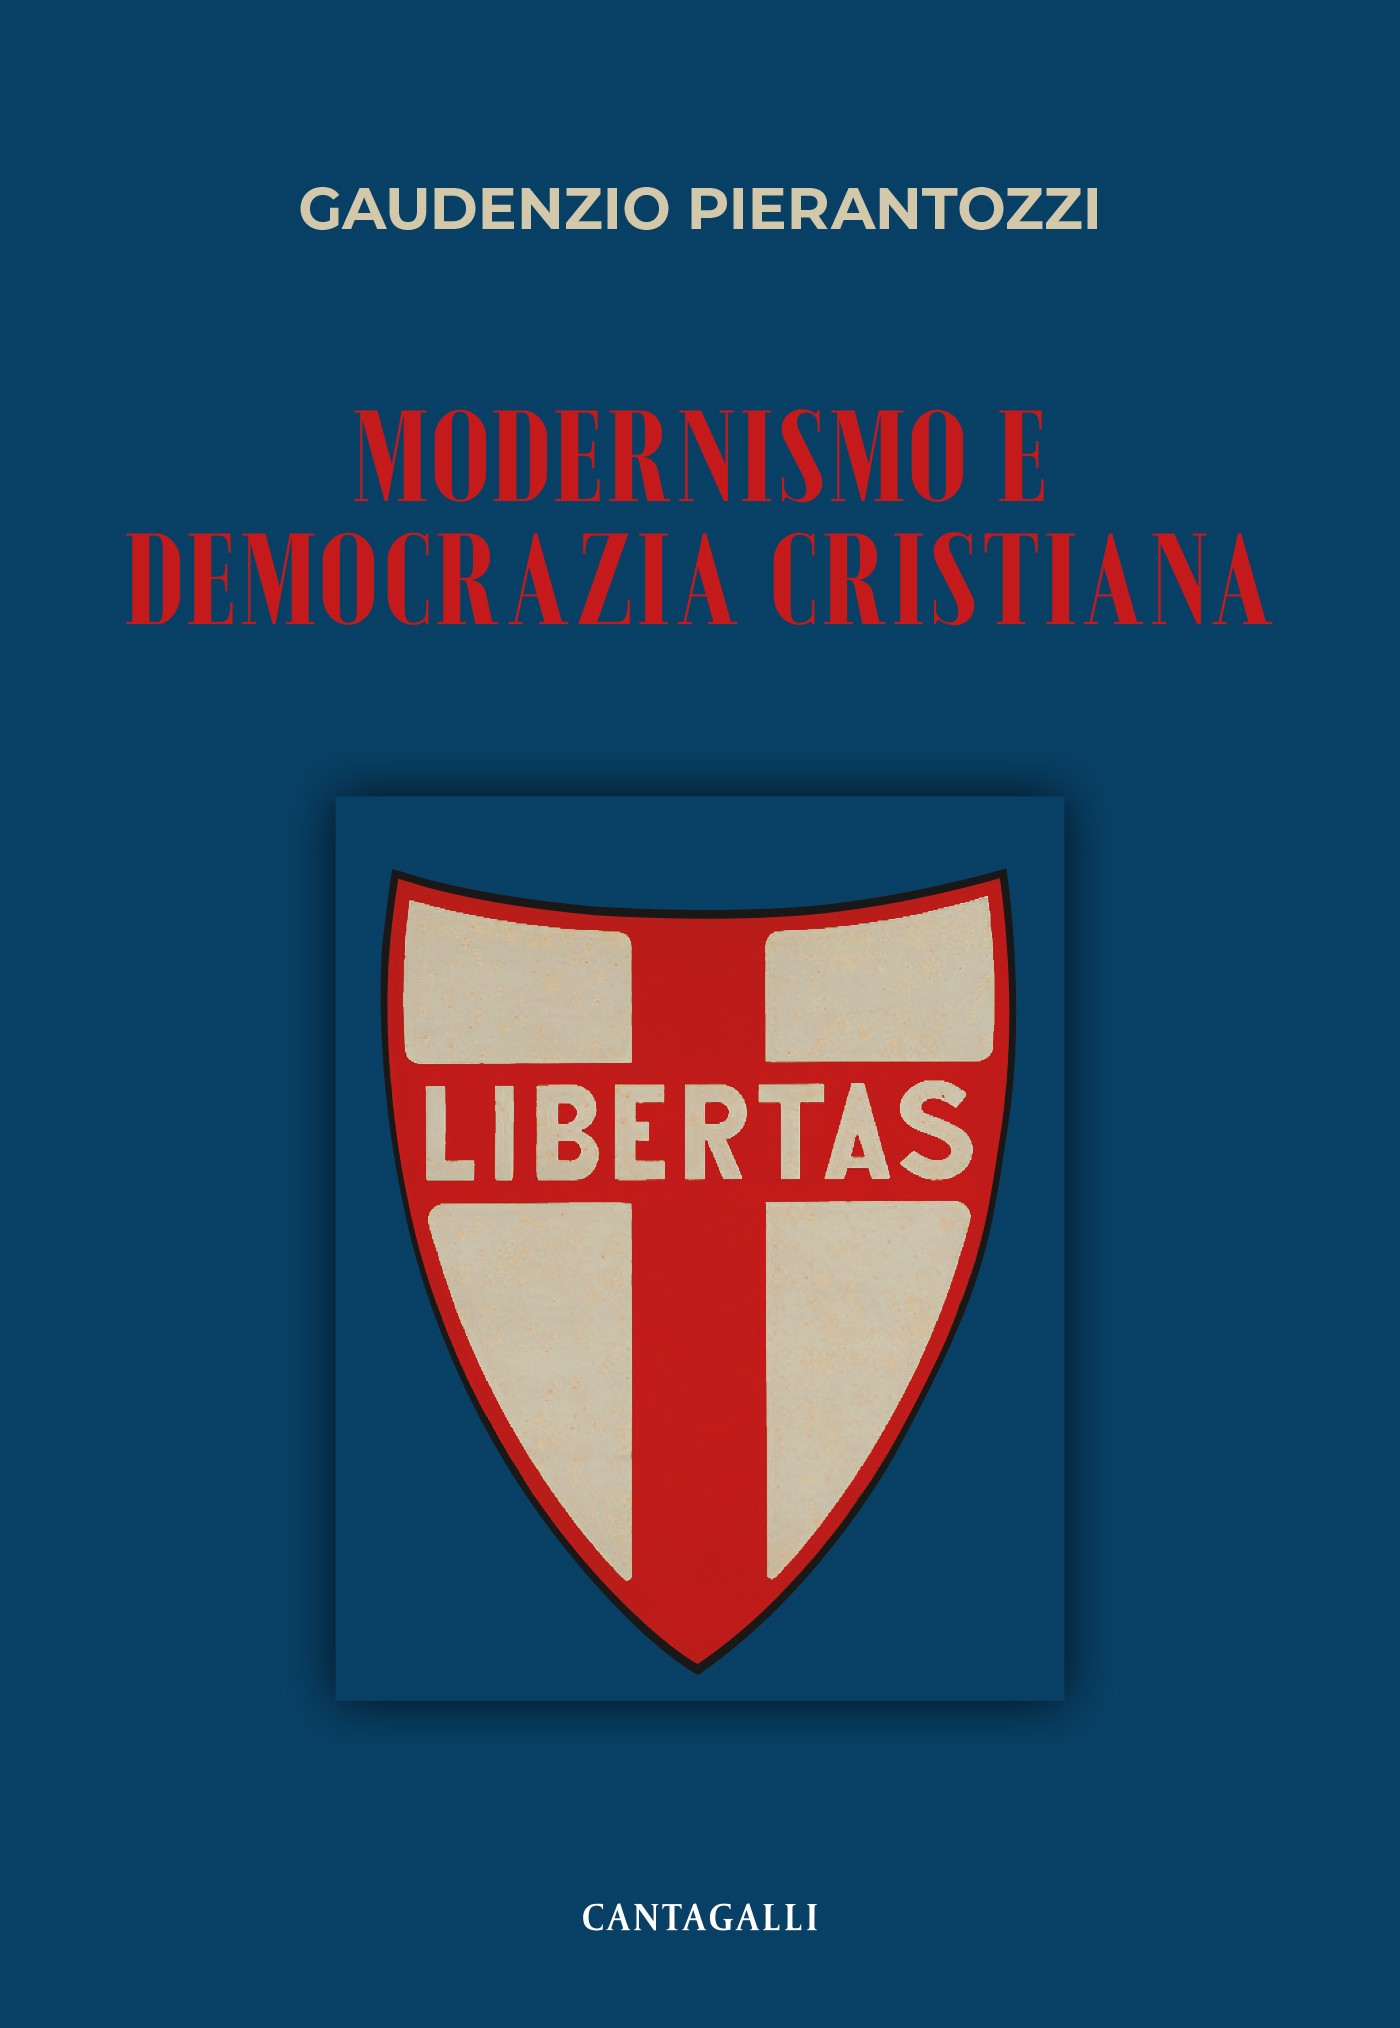 Modernismo e Democrazia cristiana - Librerie.coop